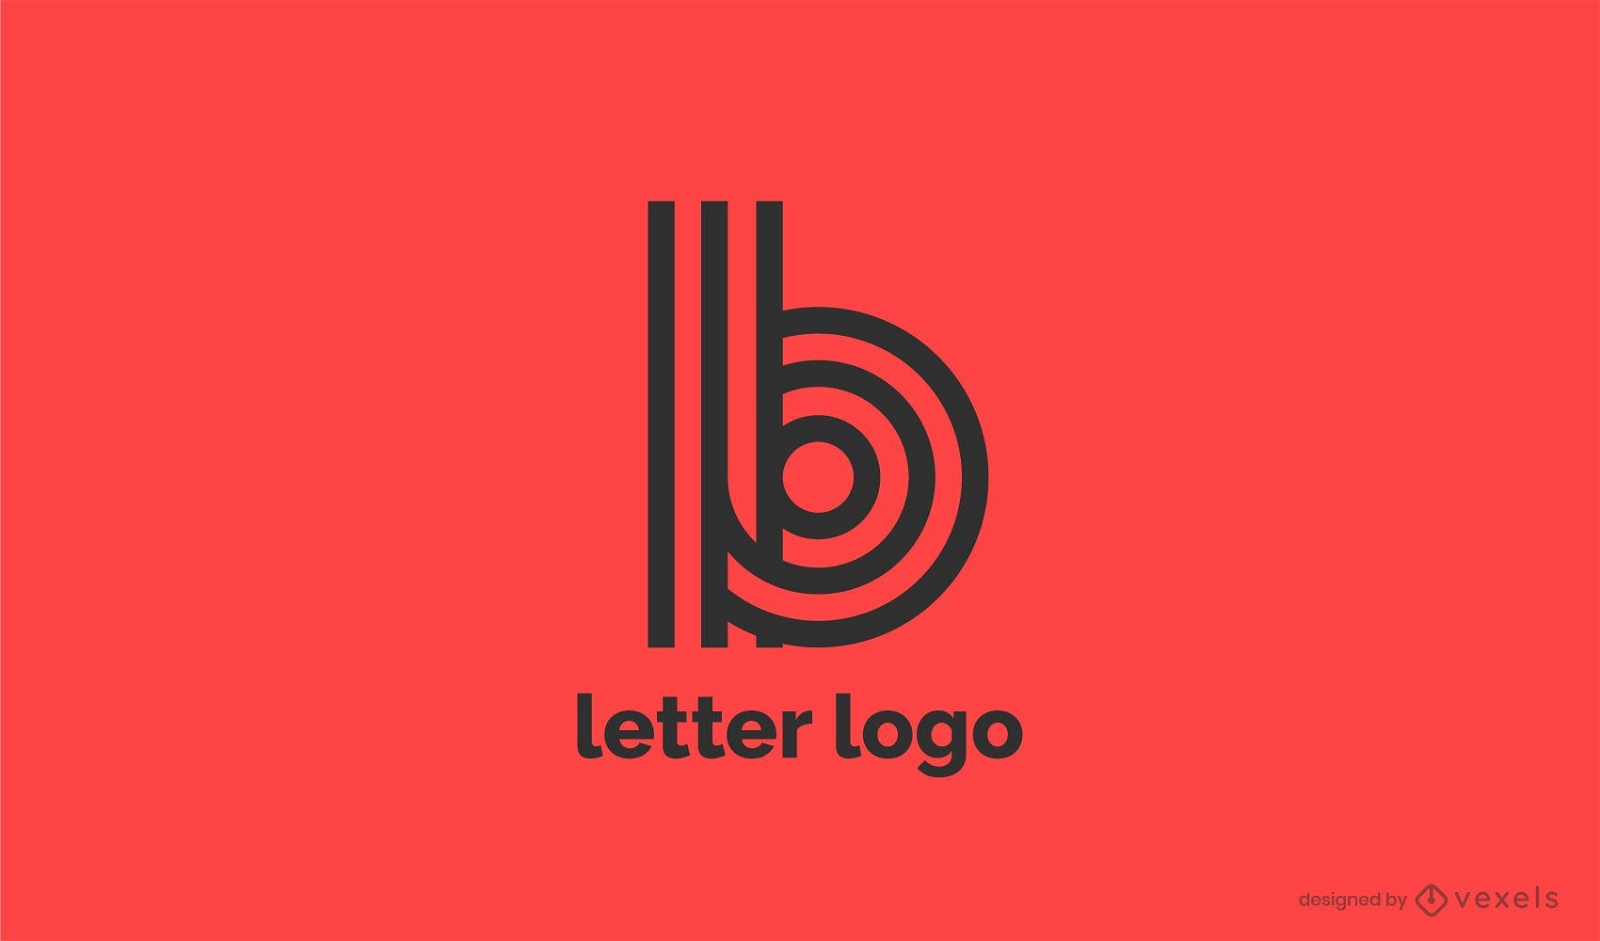 letter b logo red